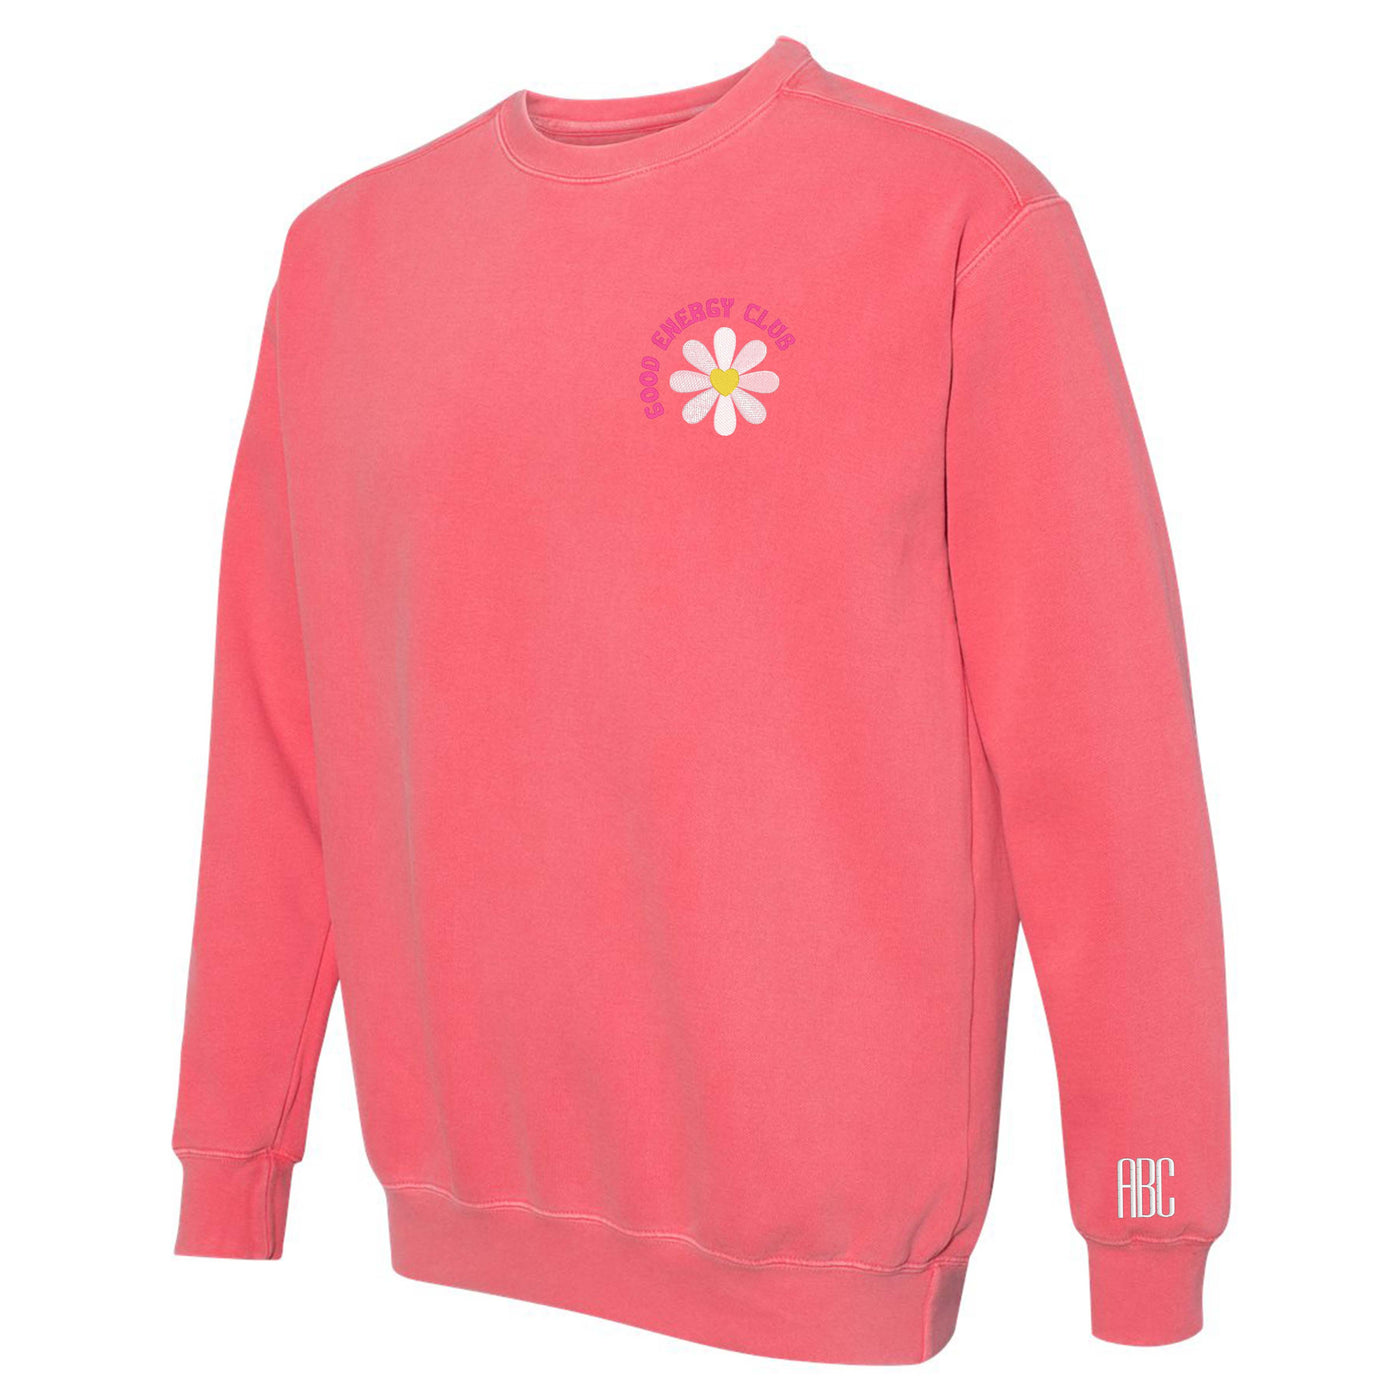 'Good Energy Club' Comfort Colors Sweatshirt